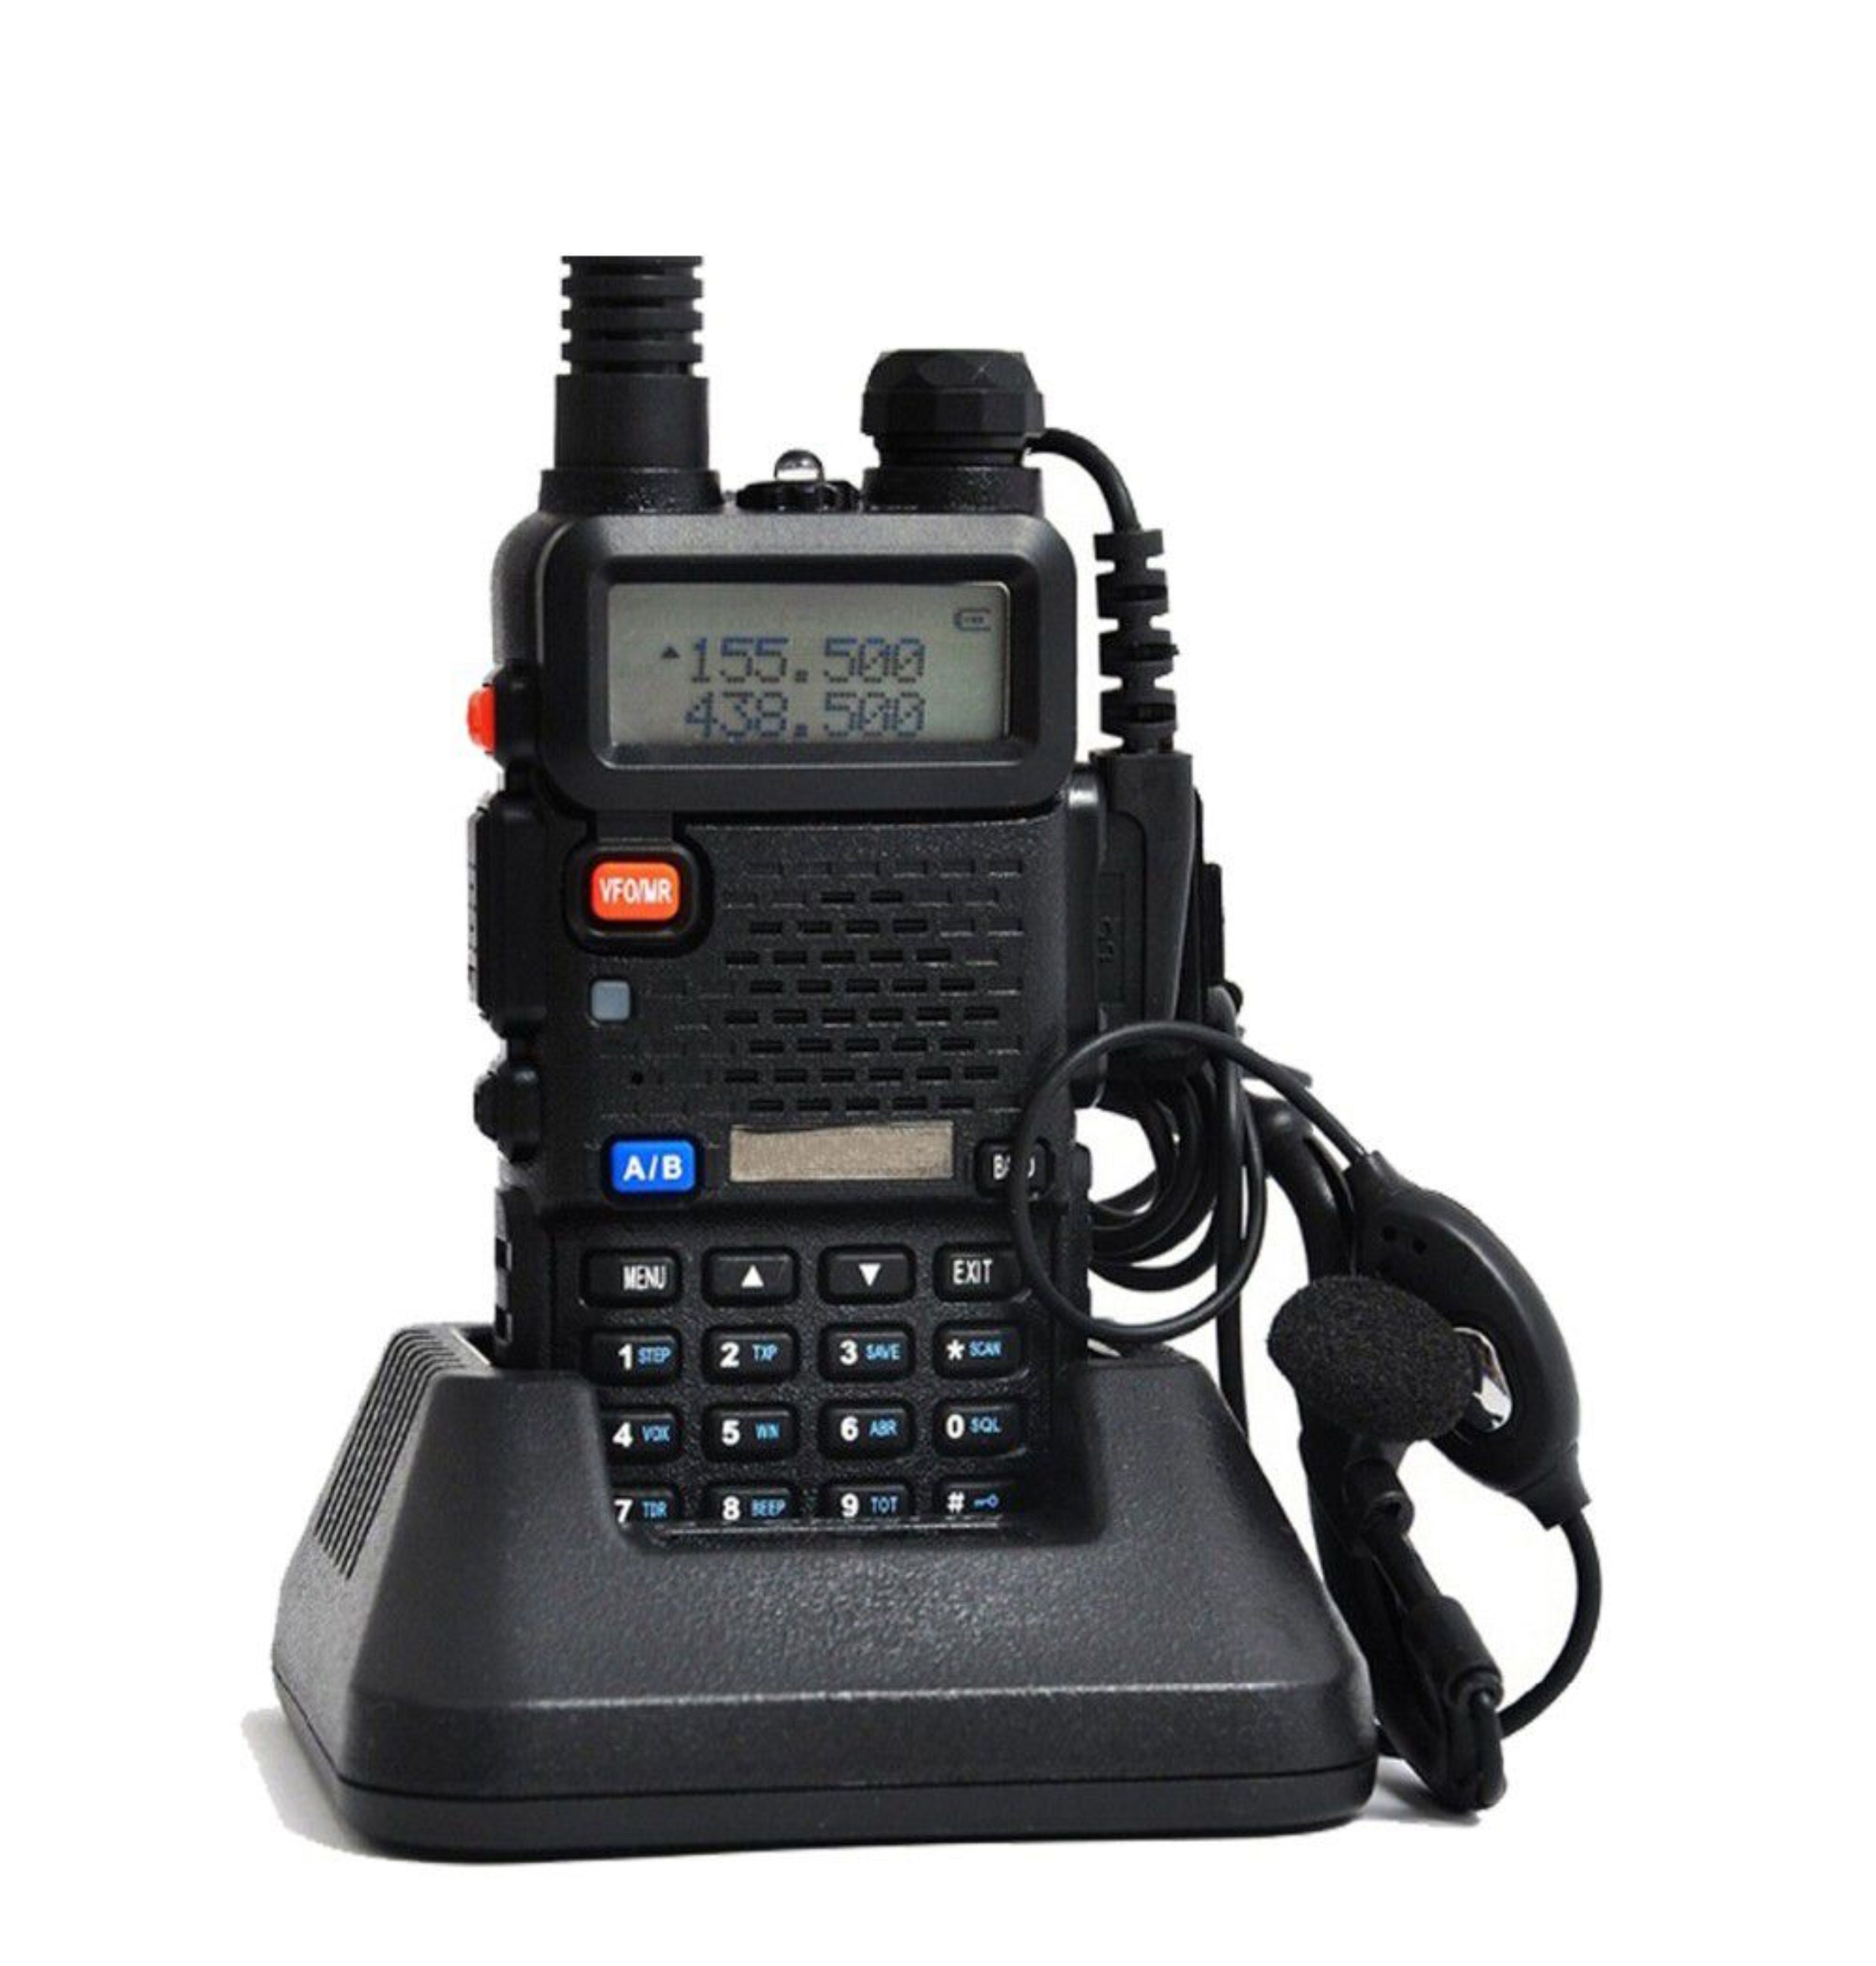 Professional handheld walkie talkie 8W